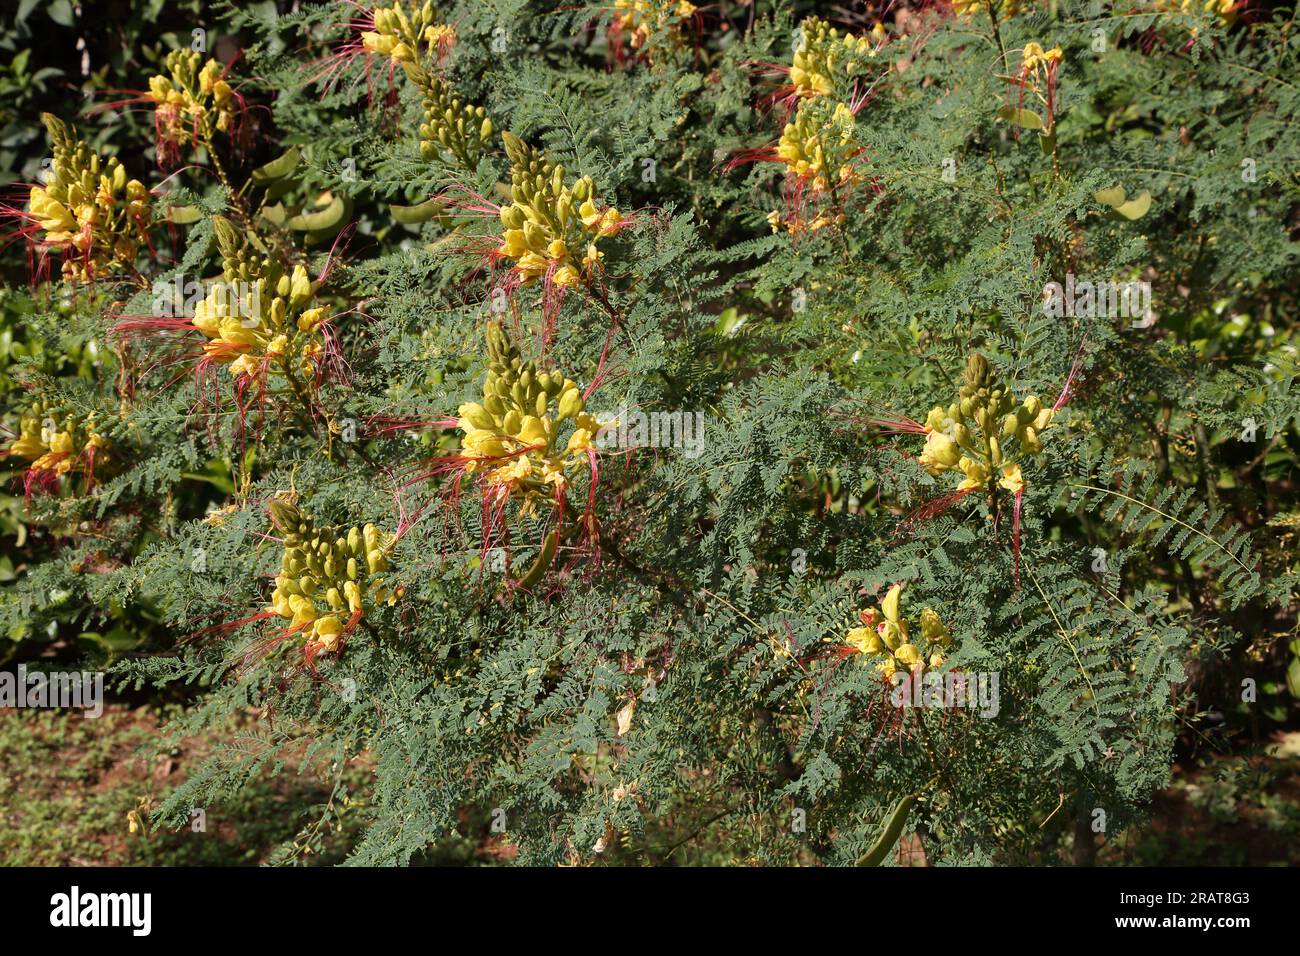 Vouliagmeni Attica Grecia uccello giallo del Paradiso (Caesalpinia Gilliesi) Arbusto con fiori gialli e lunghi stami rossi Foto Stock